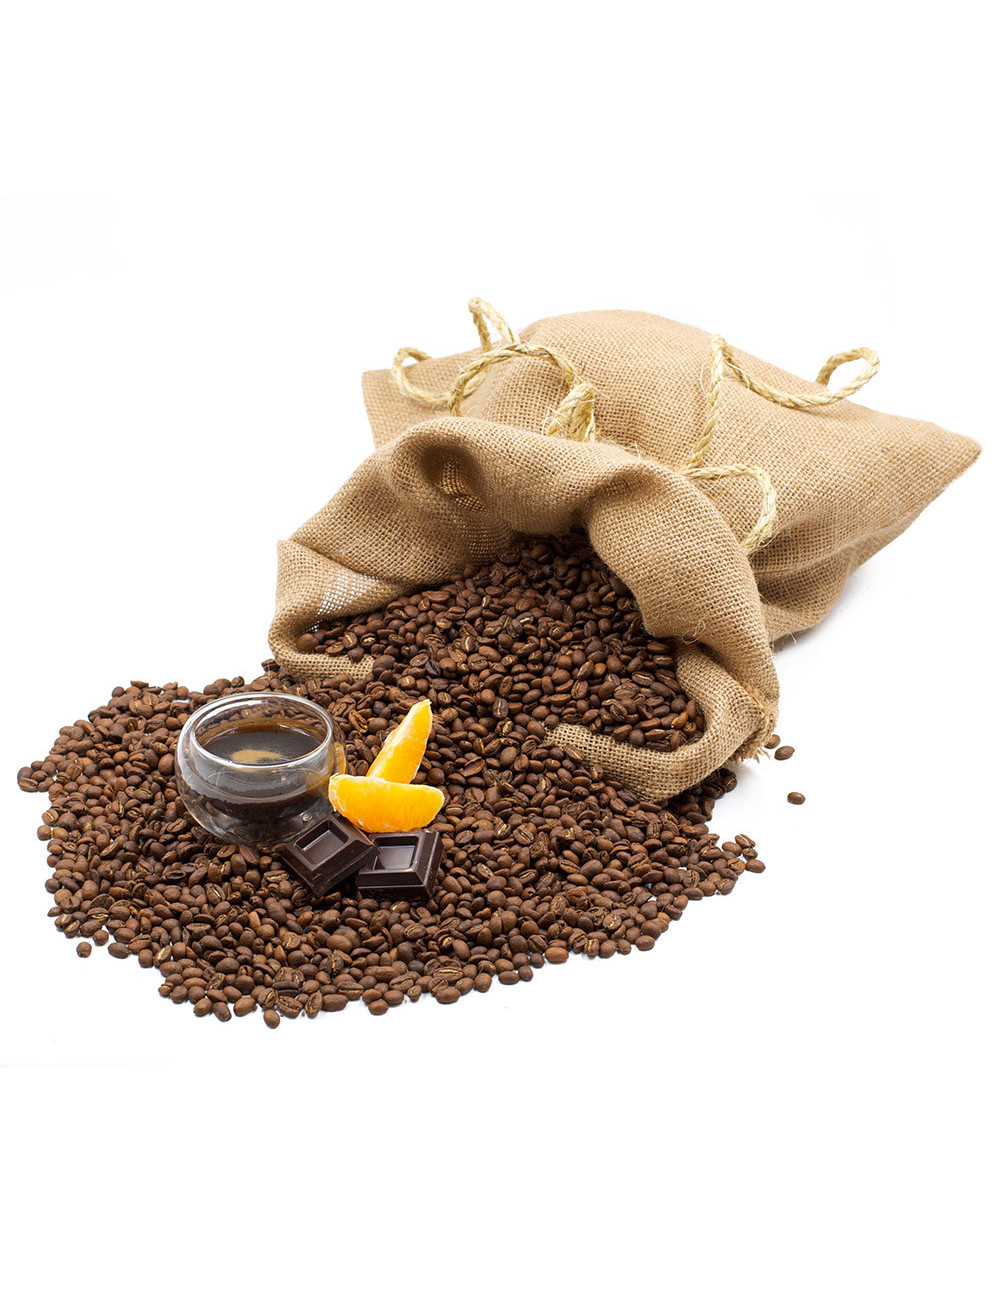 Caffè Cioccolato e Arancia aromatizzato - La Pianta del Tè shop online